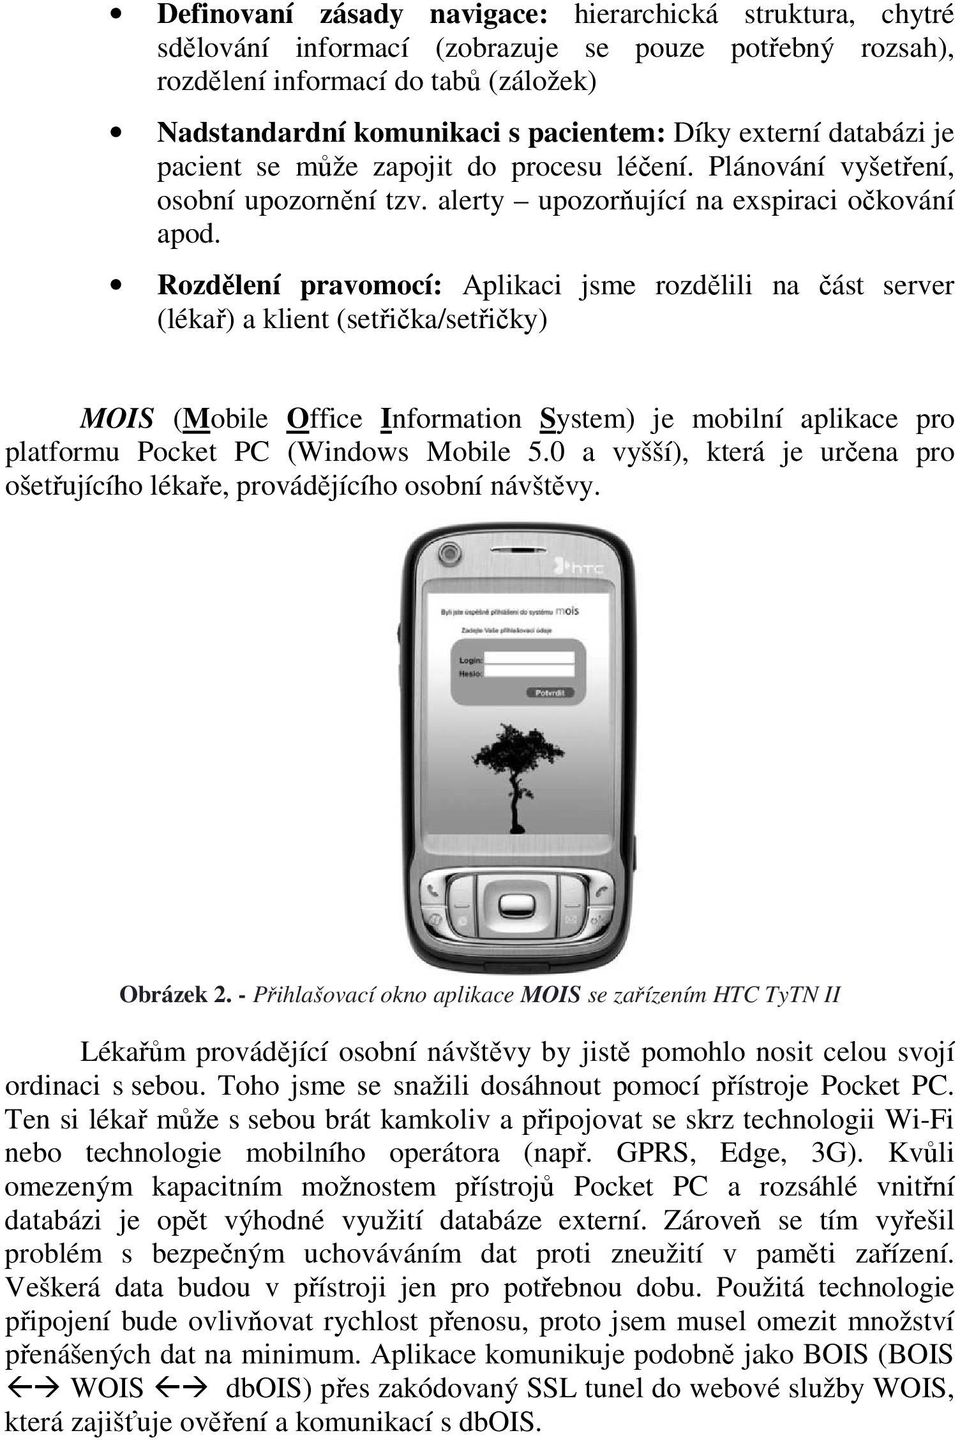 Rozdělení pravomocí: Aplikaci jsme rozdělili na část server (lékař) a klient (setřička/setřičky) MOIS (Mobile Office Information System) je mobilní aplikace pro platformu Pocket PC (Windows Mobile 5.